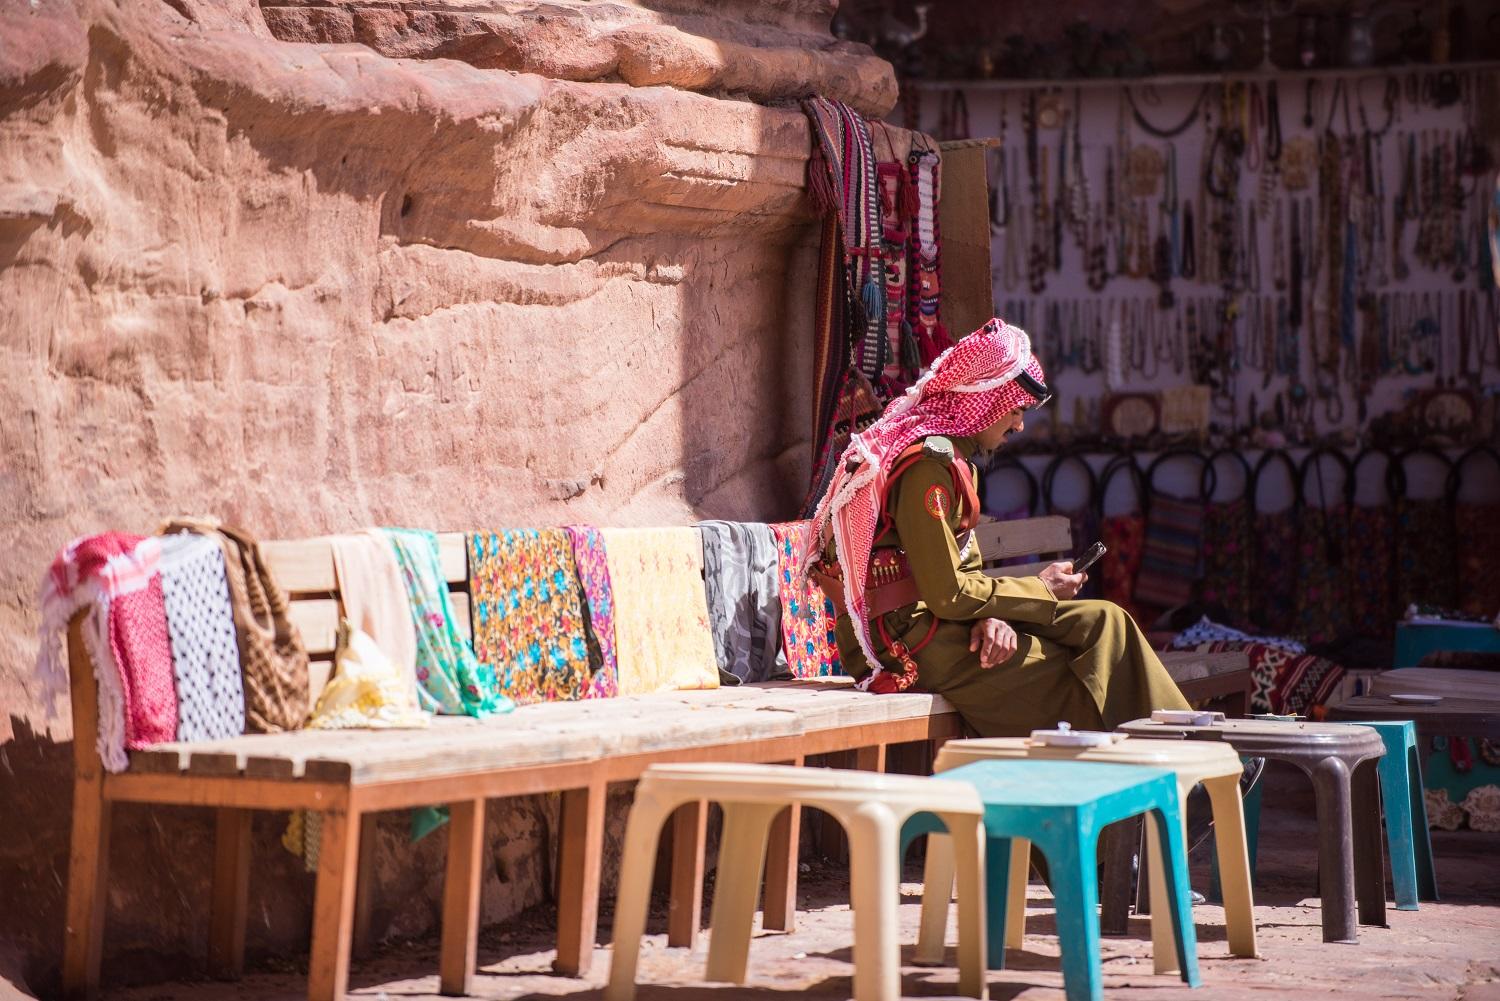 صورة لفرد من قوات البادية الأردنية في منطقة البترا يستخدم هاتفاً خلوياً. imeduard /Shutterstock.com